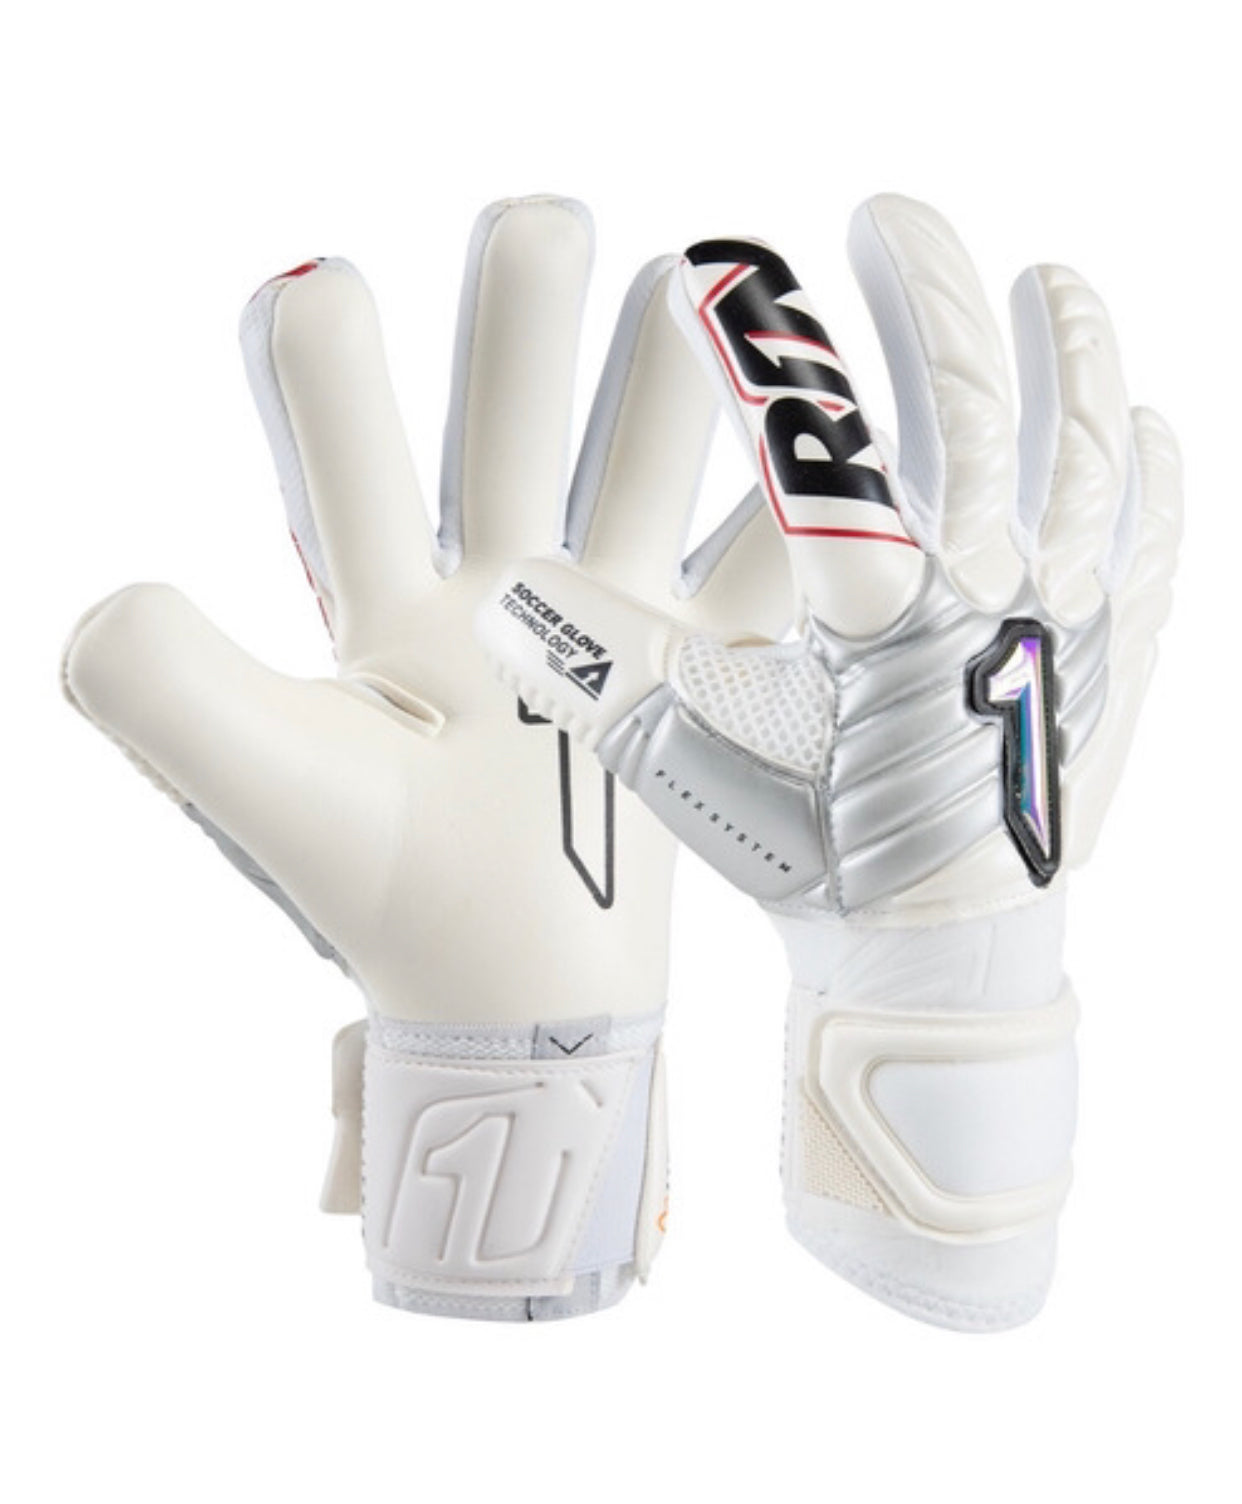 White RNT (NXTGEN) High Performance Pro-Level GK Gloves